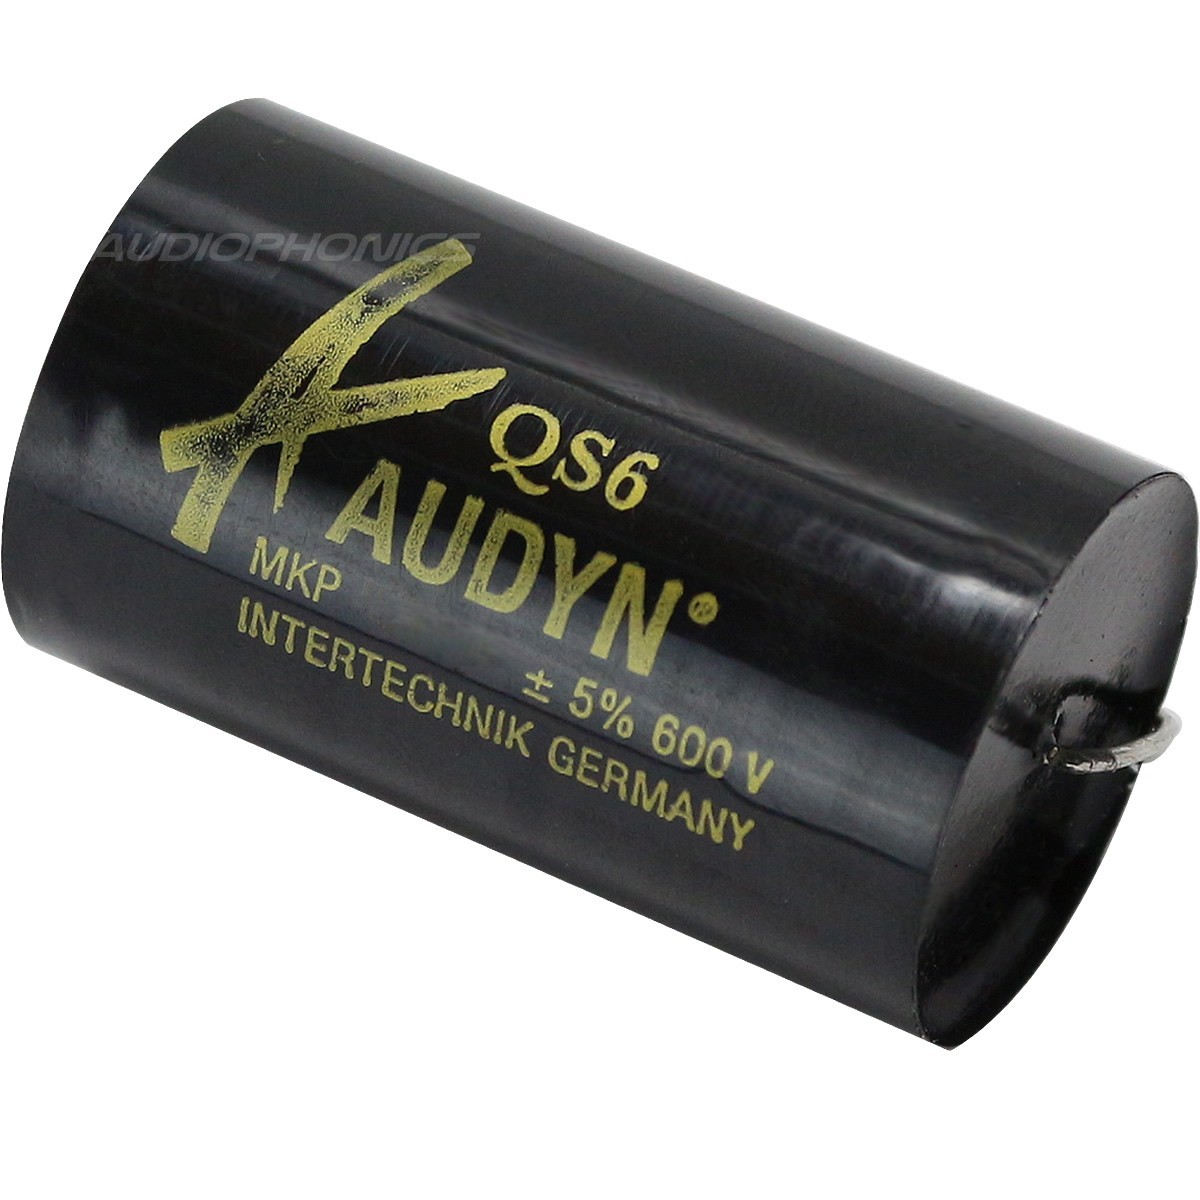 AUDYN CAP QS6 MKP Capacitor 600V 1µF